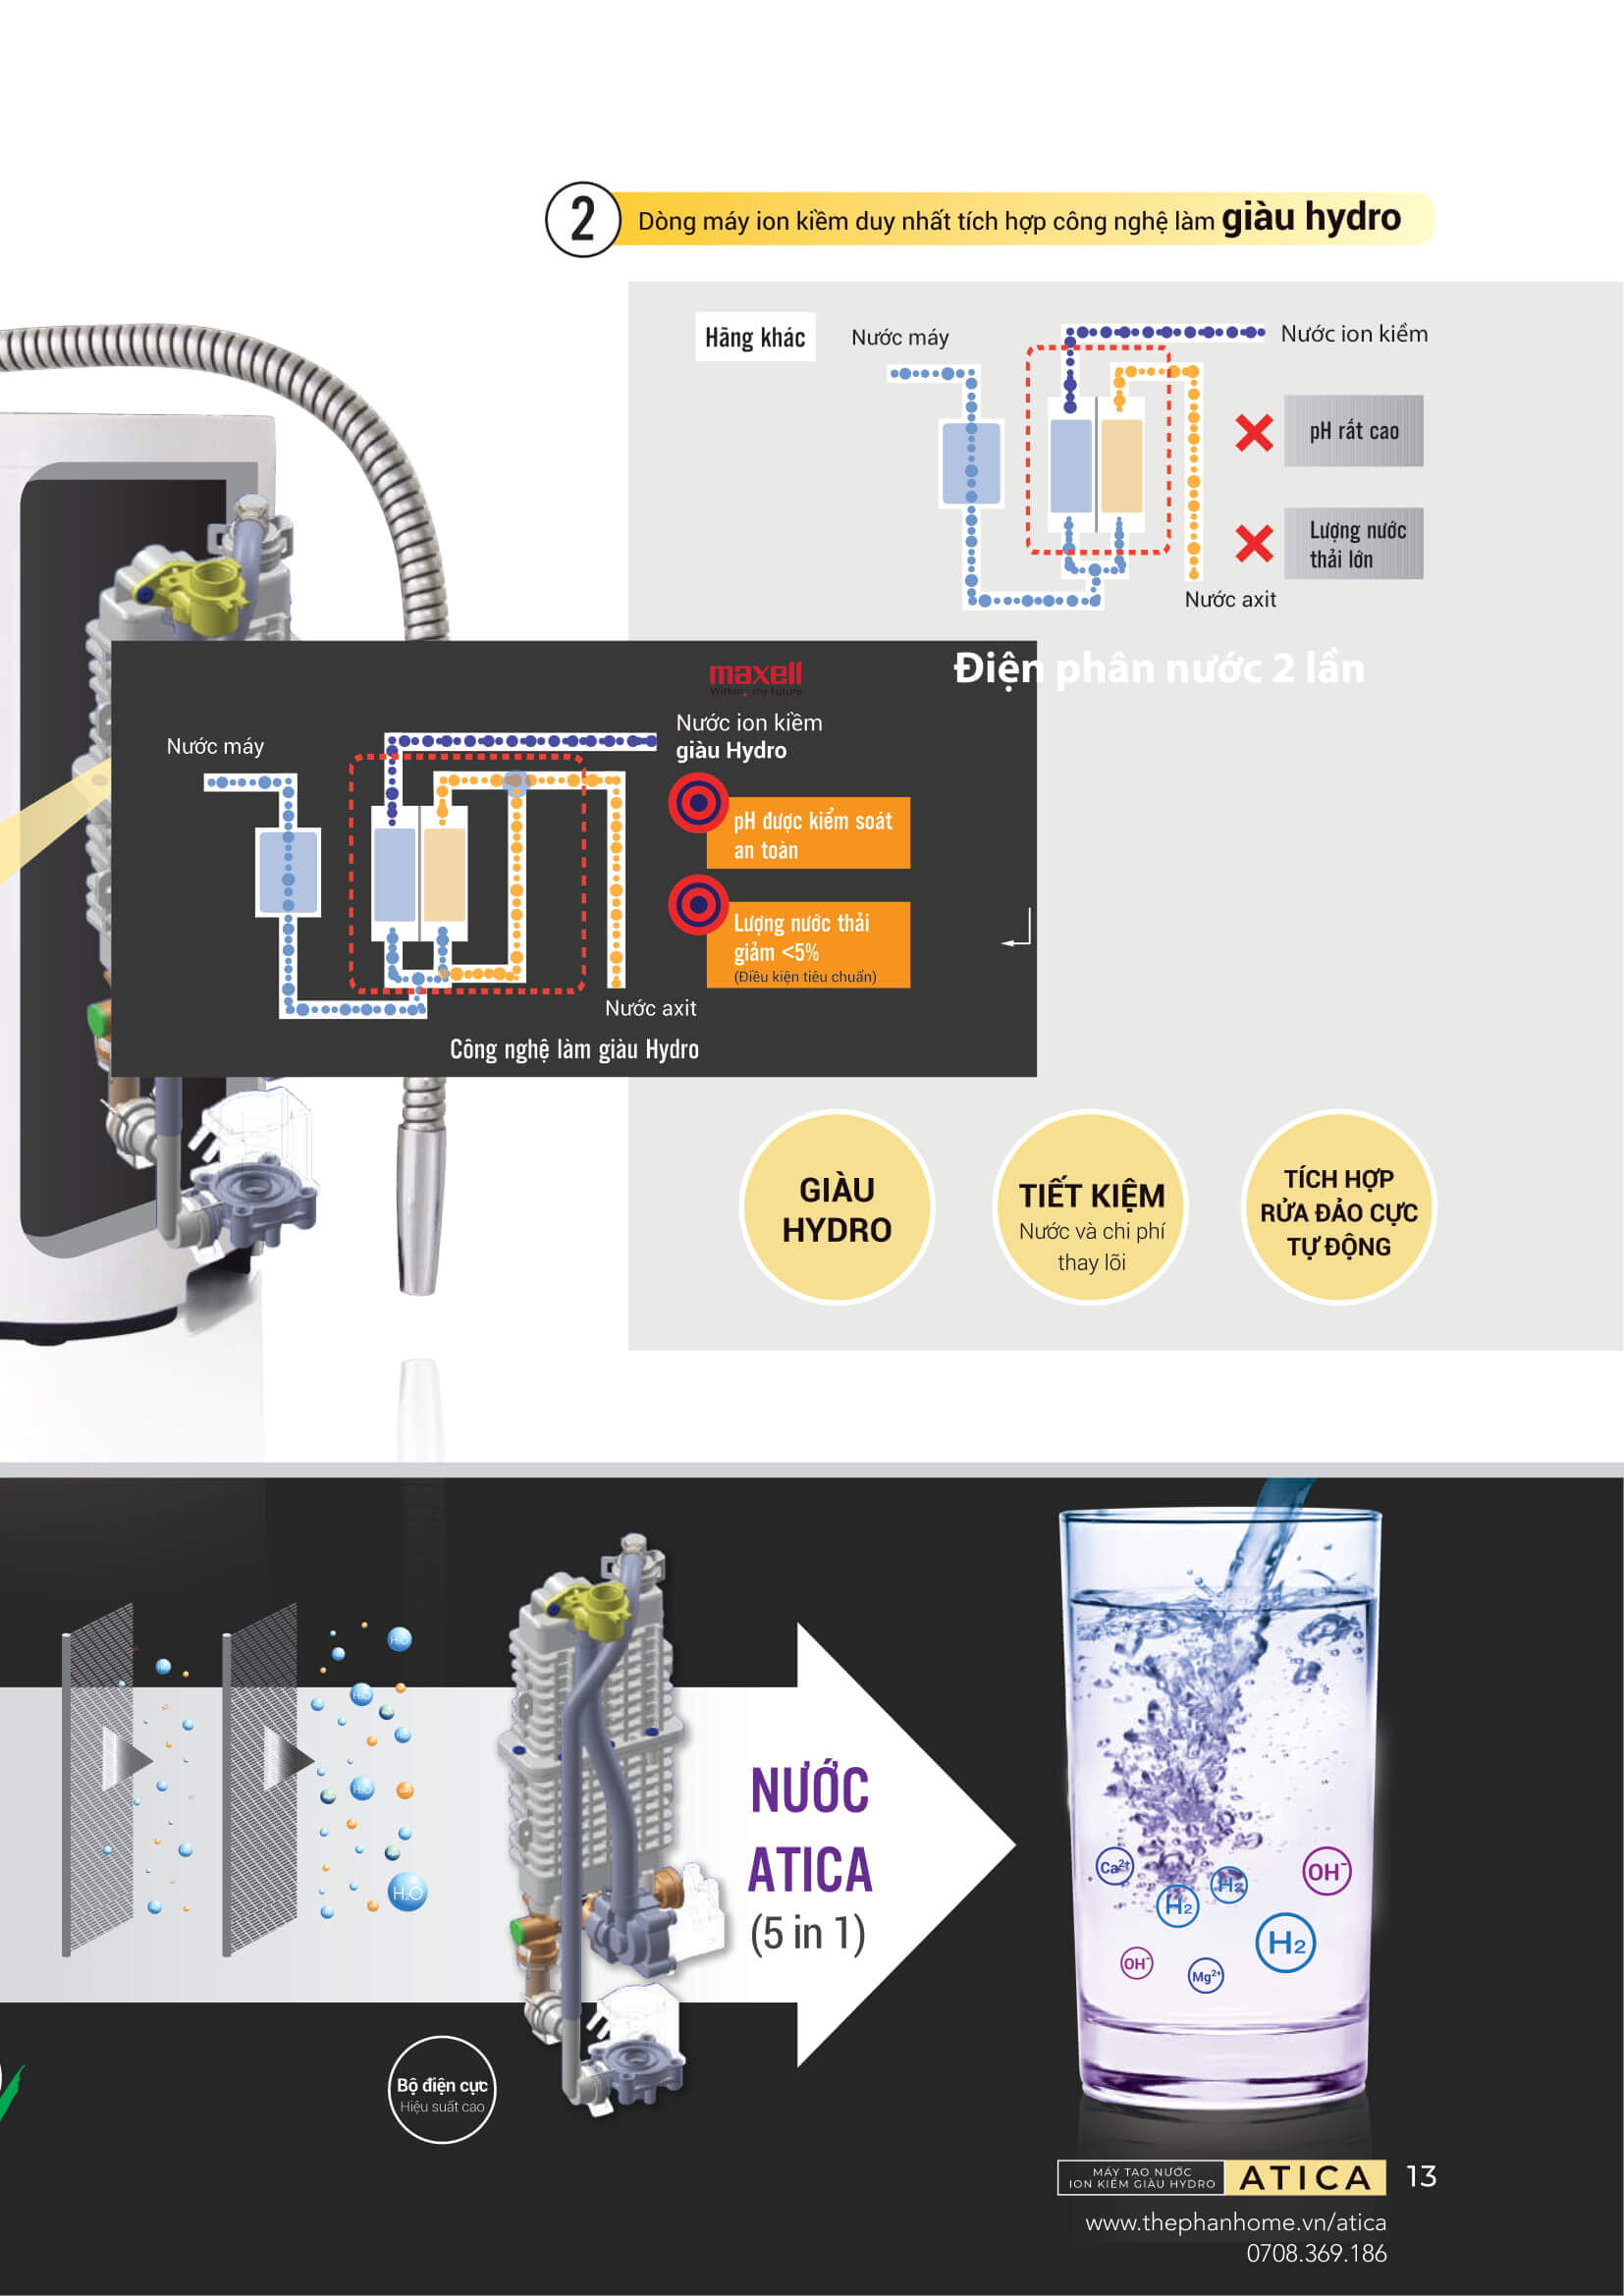 Máy Lọc Nước Điện Giải Ion Kiềm ATICA SILVER - Độc quyền công nghệ điện phân nước 2 lần